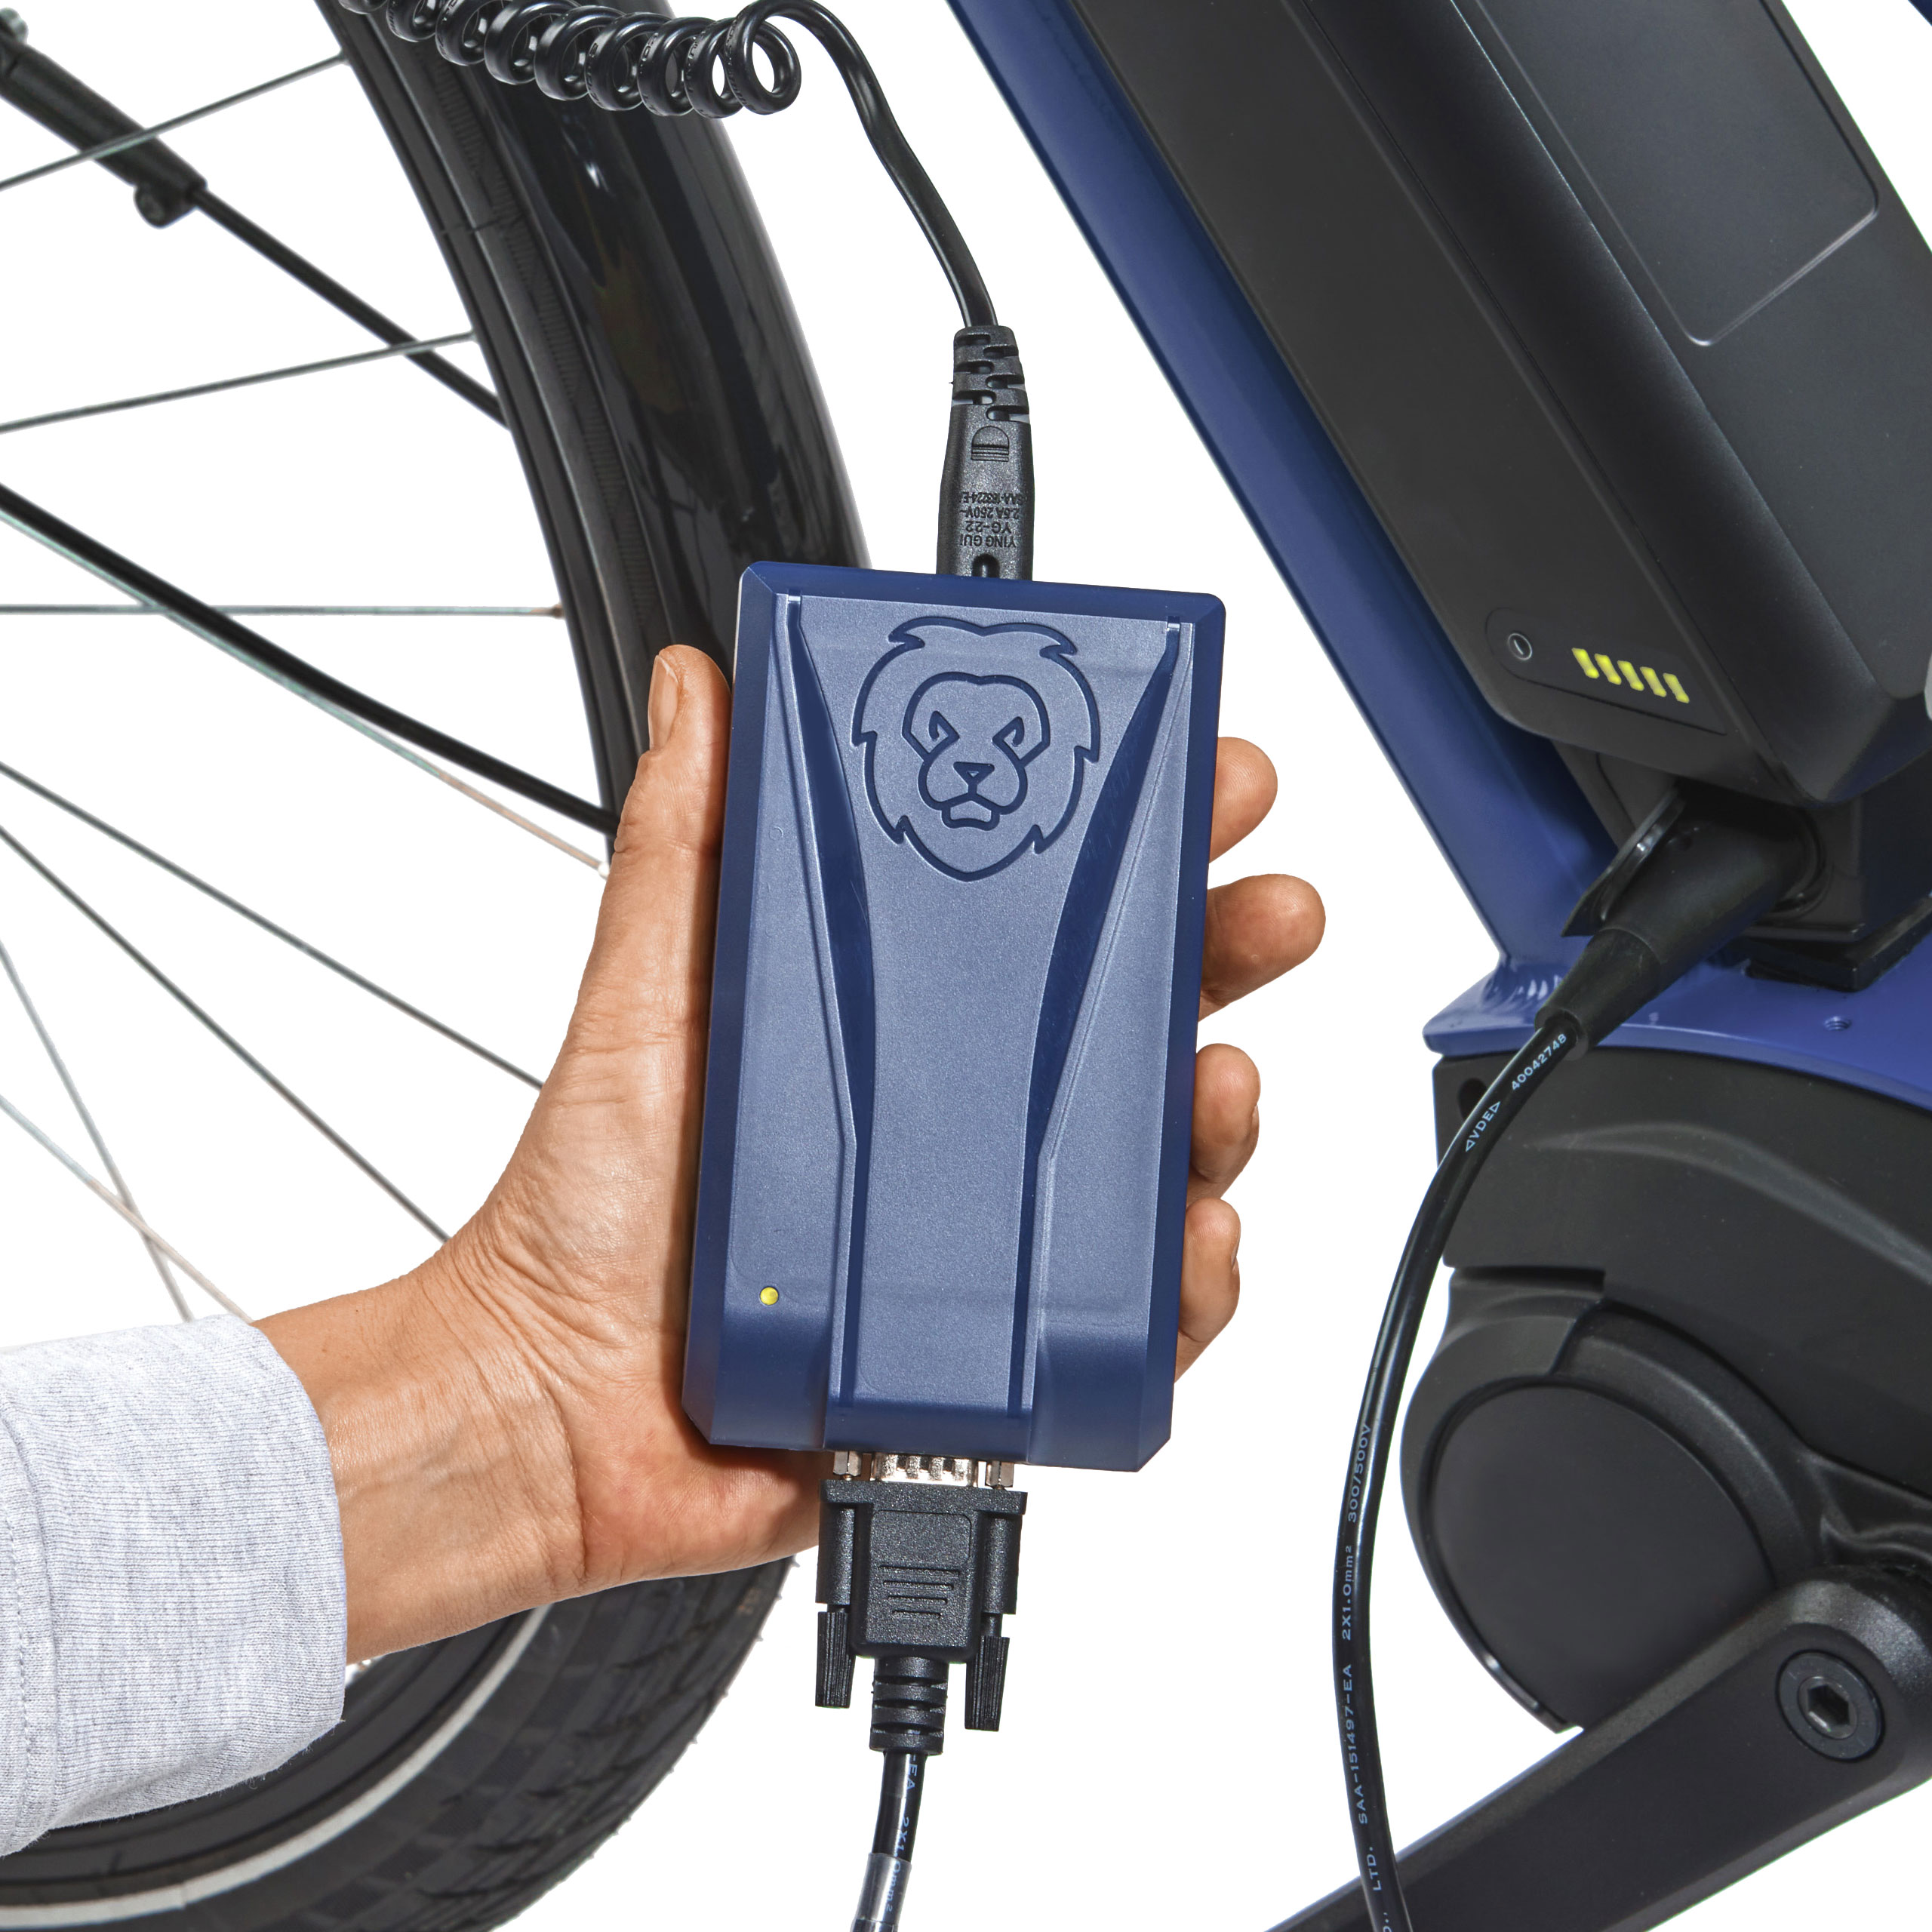 Li-ion one4all Reiseladegerät für E-Bike und E-Scooter 36 V kompatibel mit Bosch Performance Line, Performance Line CX und Bosch Active Line Serie ab dem Baujahr 2014